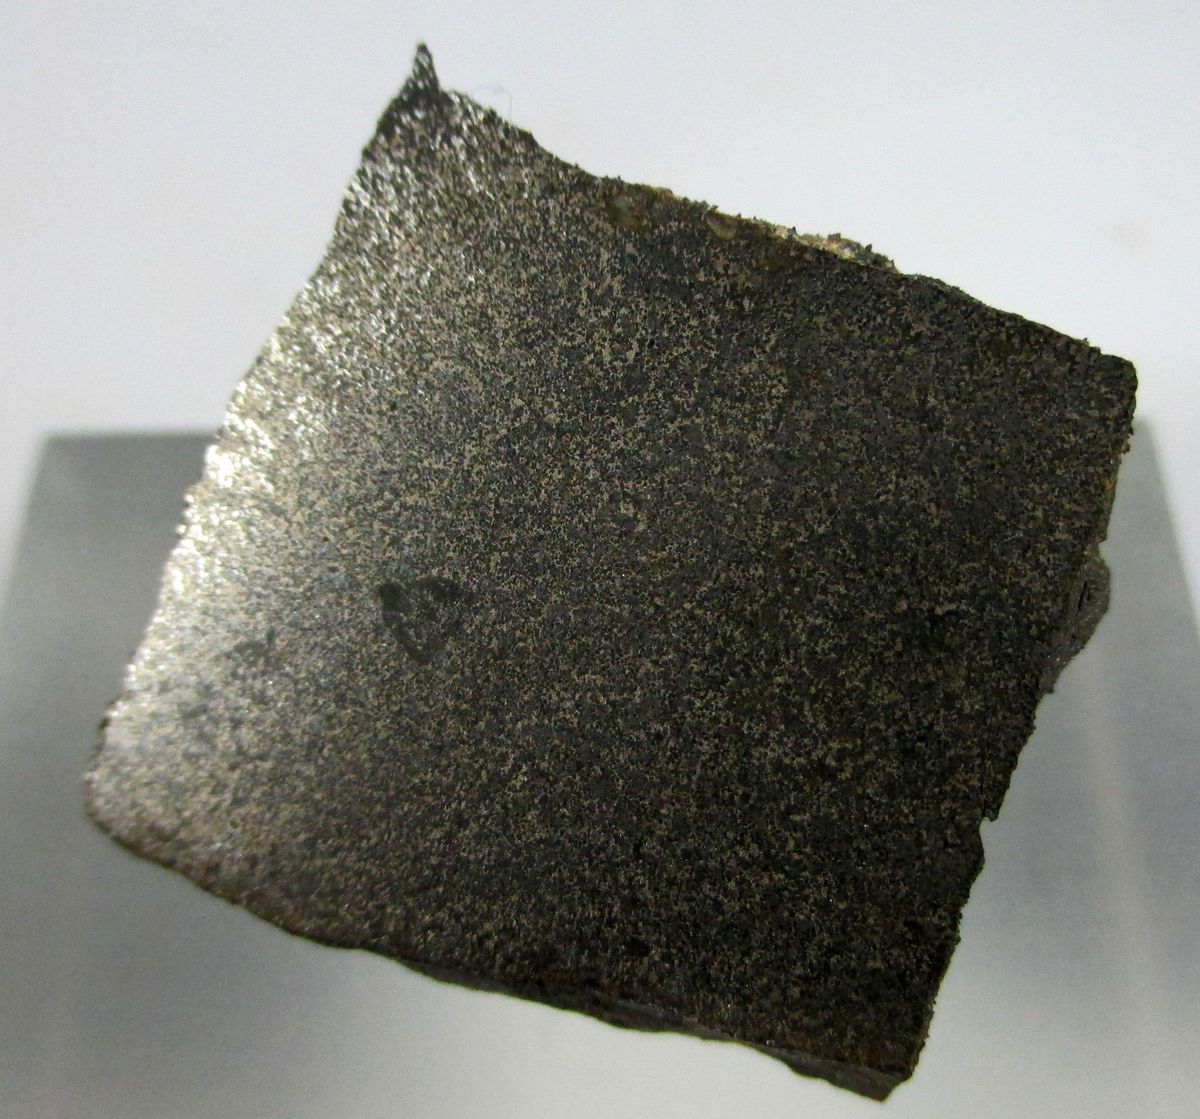 Native Iron & Cohenite In Basalt